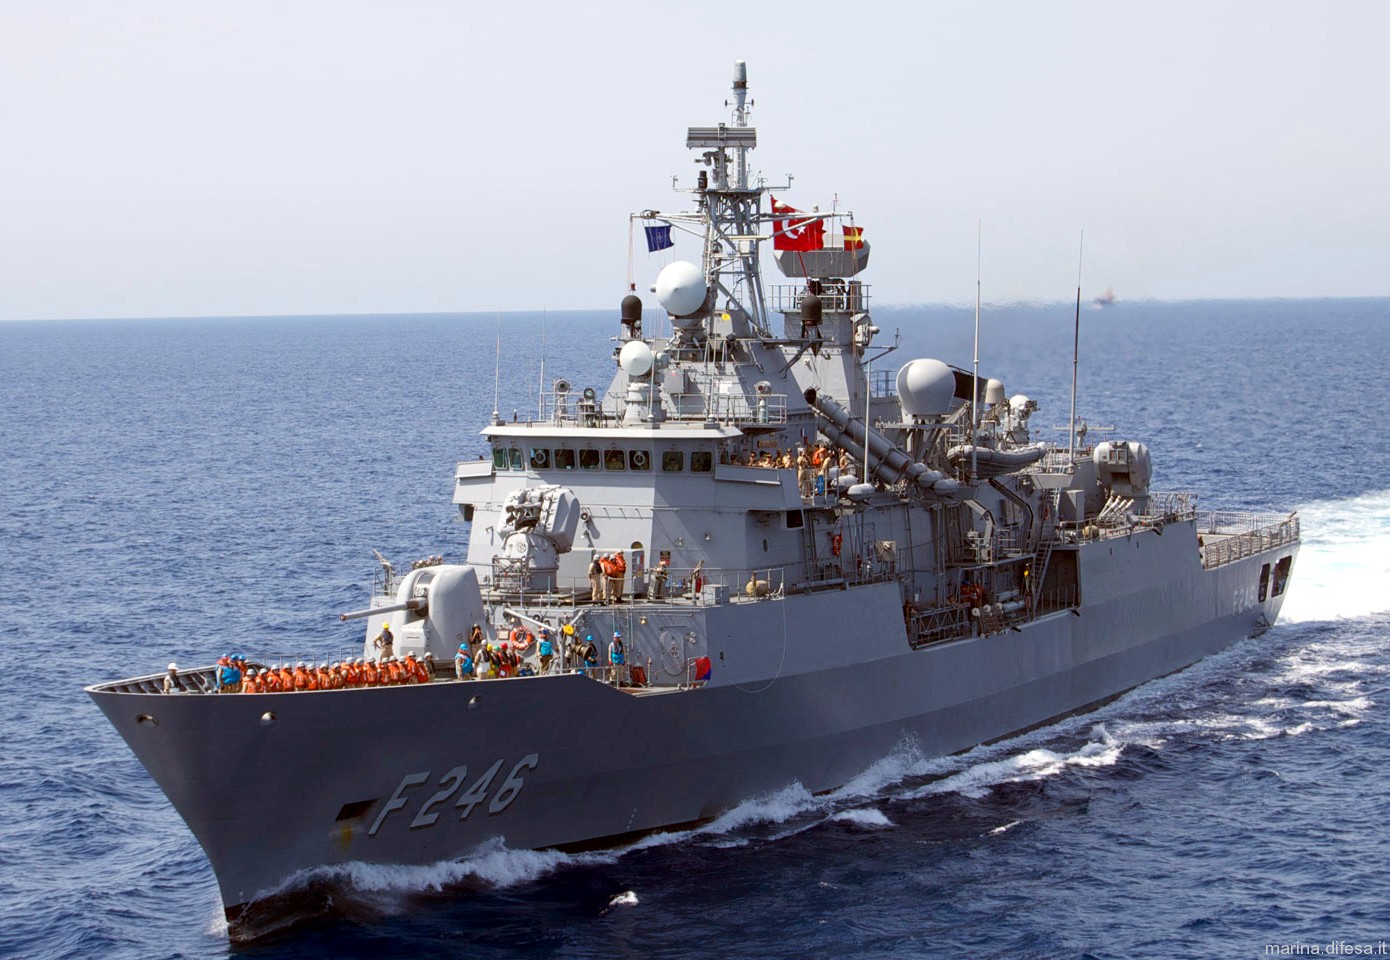 f-246 tcg salihreis barbaros class frigate meko-200tn turkish navy türk deniz kuvvetleri 03